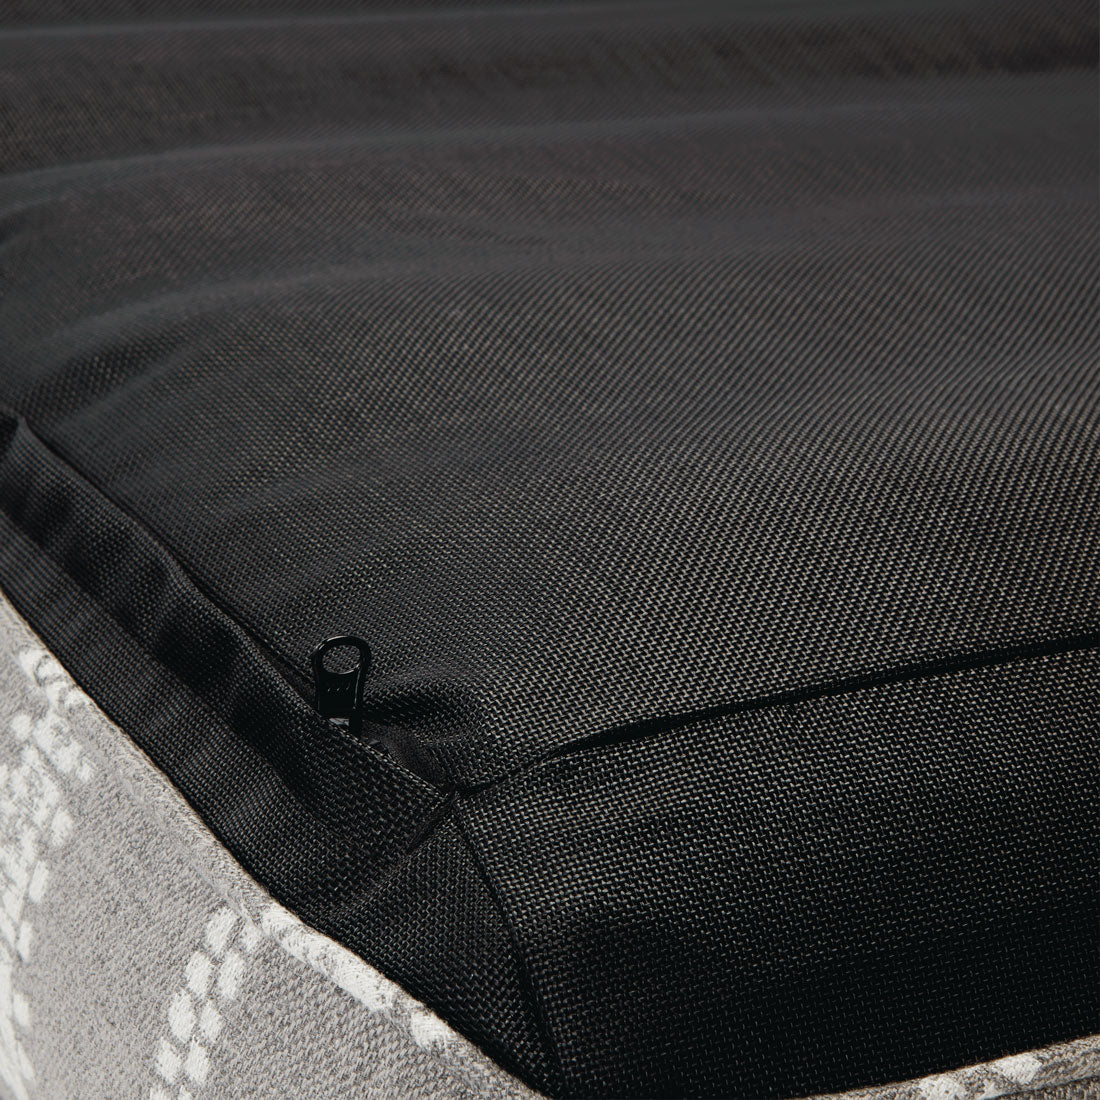 Une chaise longue de luxe à rayures grises et blanches, à l'envers, qui présente la fermeture éclair, la base et les coutures.